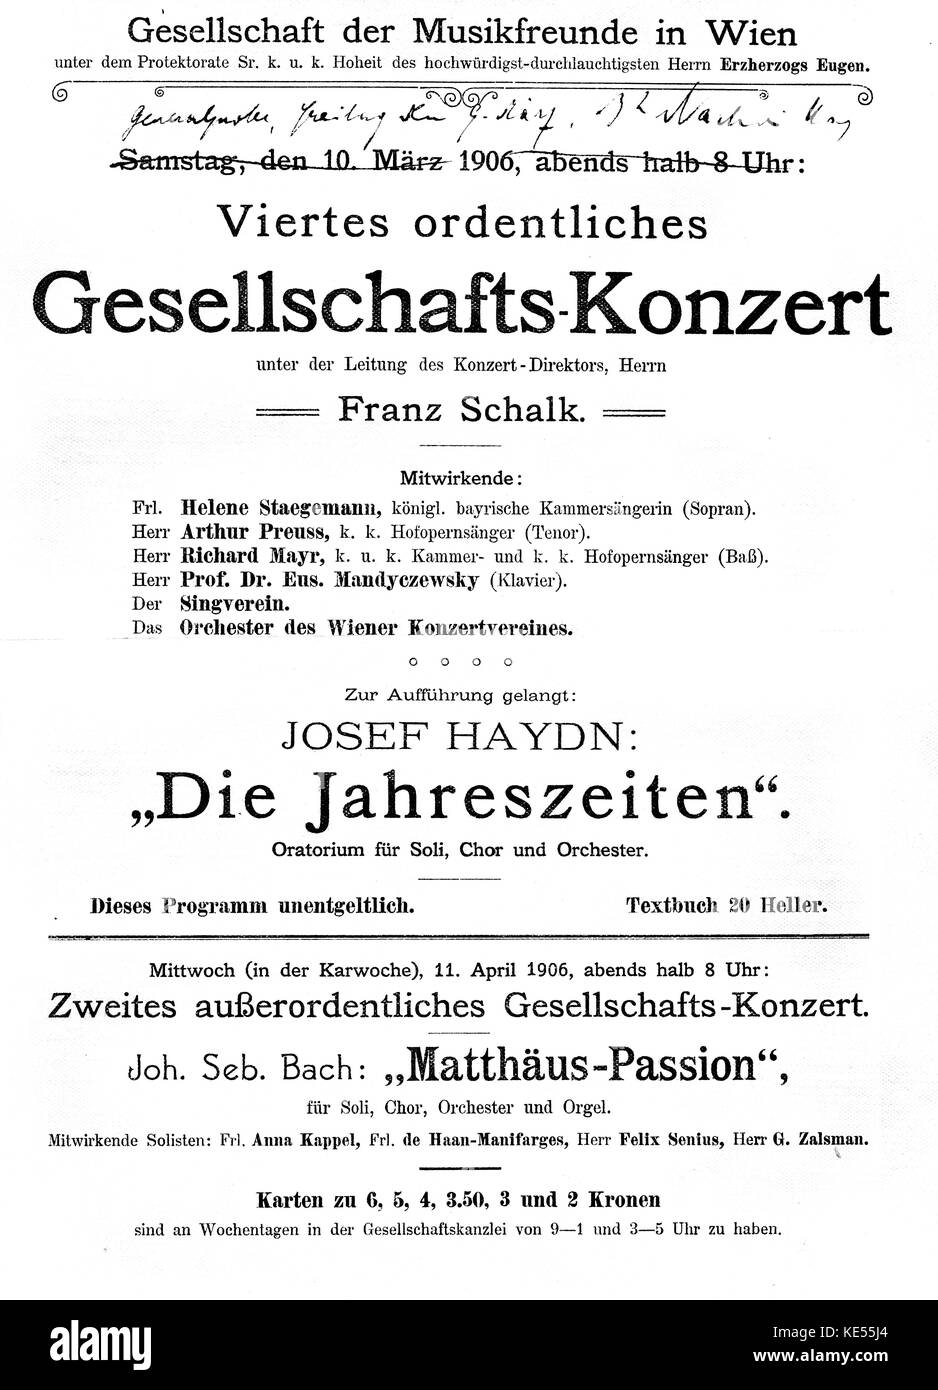 Placard for Joseph Haydn 's 'Die Jahreszeiten'. / The Seasons.  Saturday 10 March, 1906. Performed at Gesellschaft der Musikfreunde in Wien. / Vienna. Stock Photo